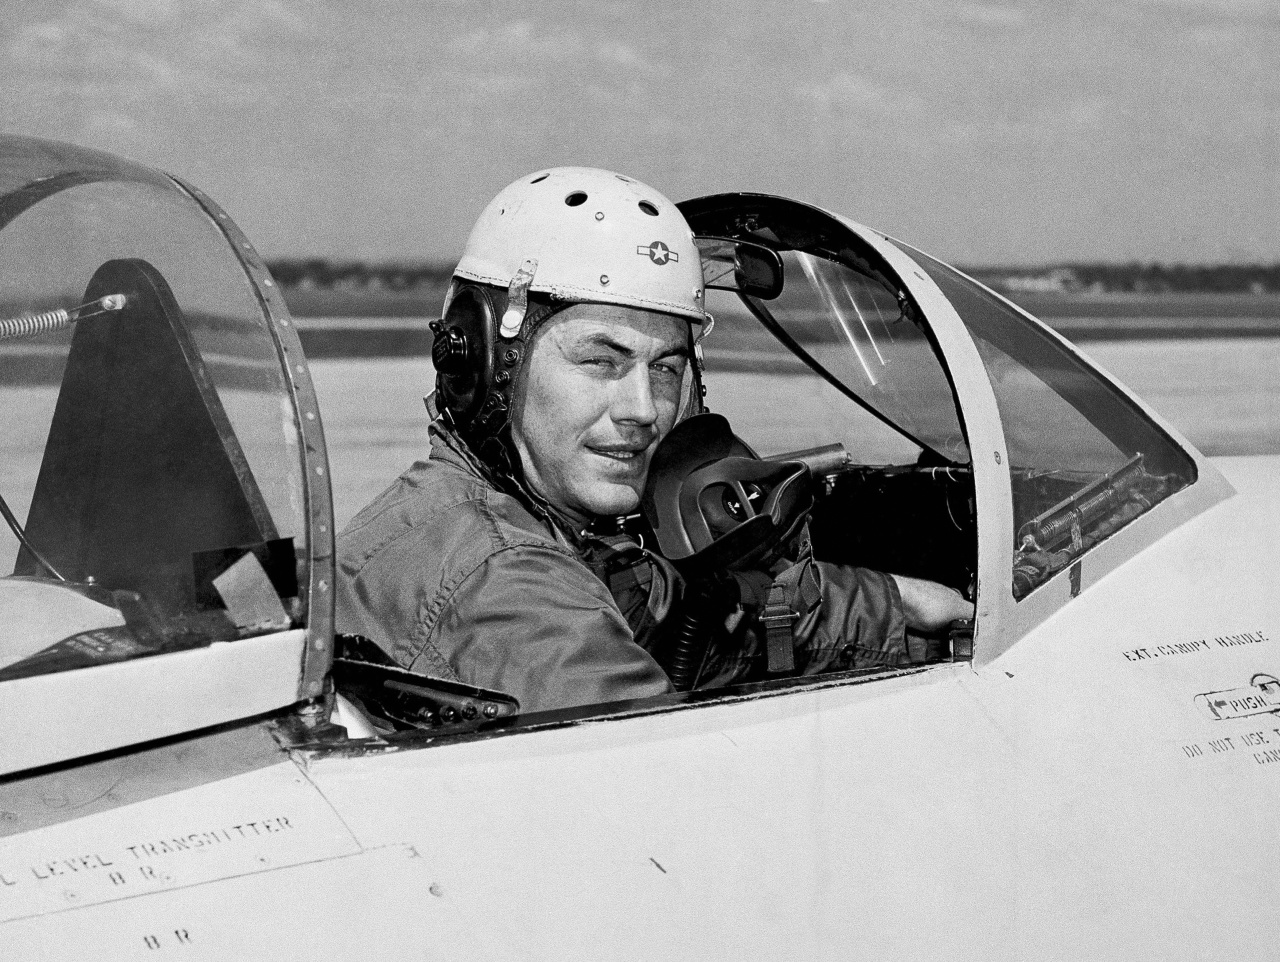 Na archívnej snímke z roku 1948 dvadsaťpäťročný skúšobný pilot Charles E. Yeager pózuje v kokpite stíhačky.